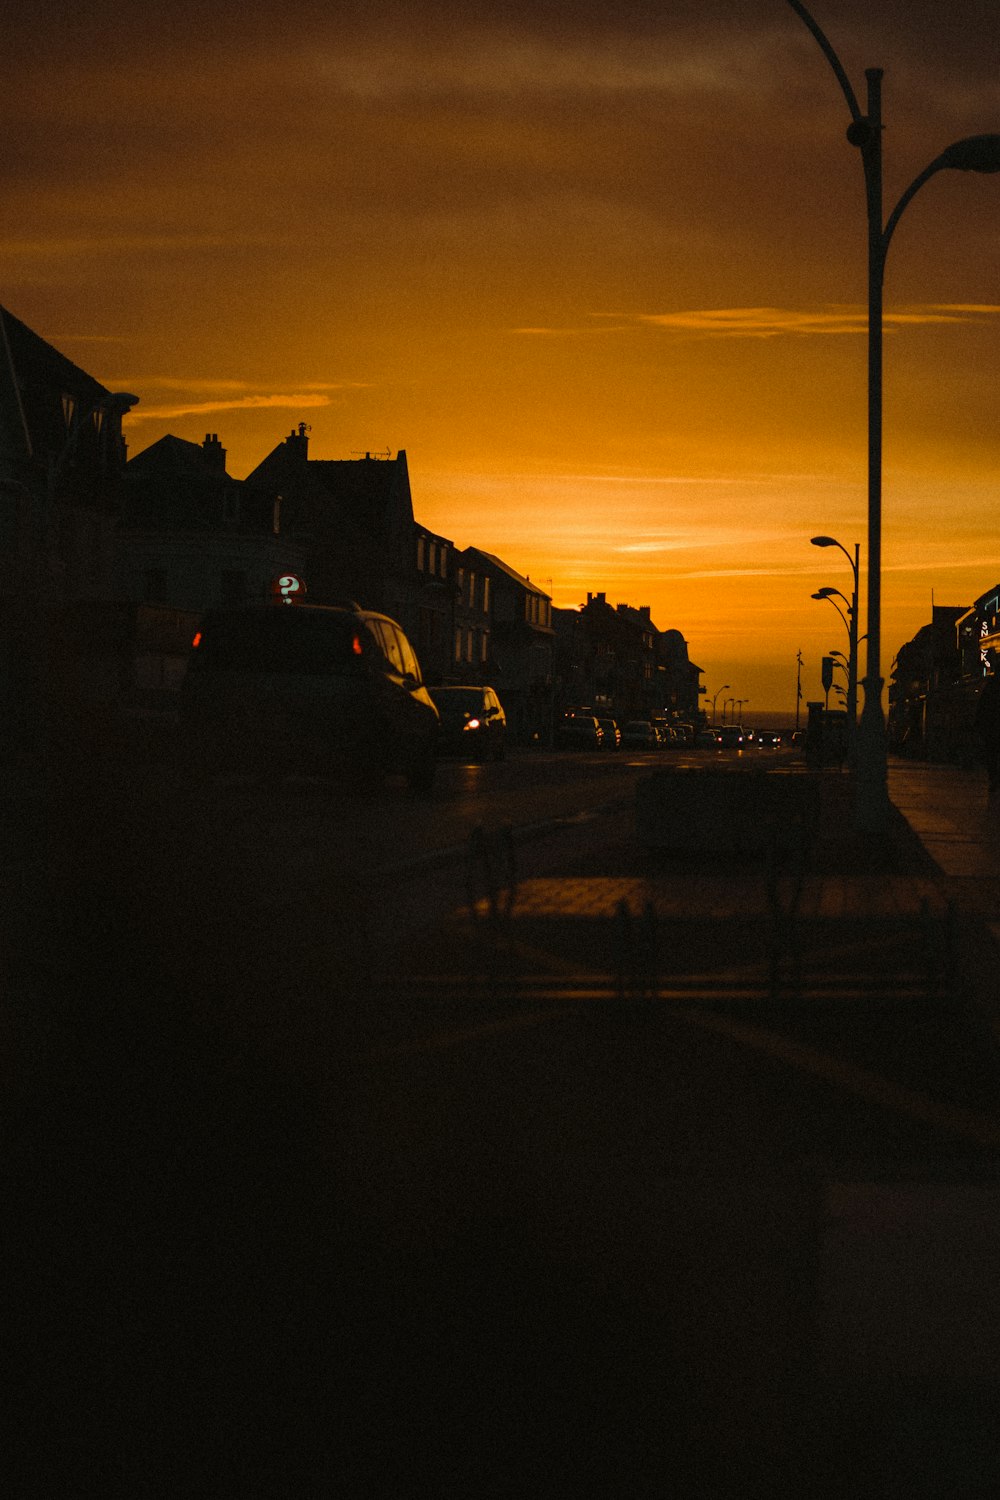 Coches aparcados a un lado de la carretera durante la puesta de sol